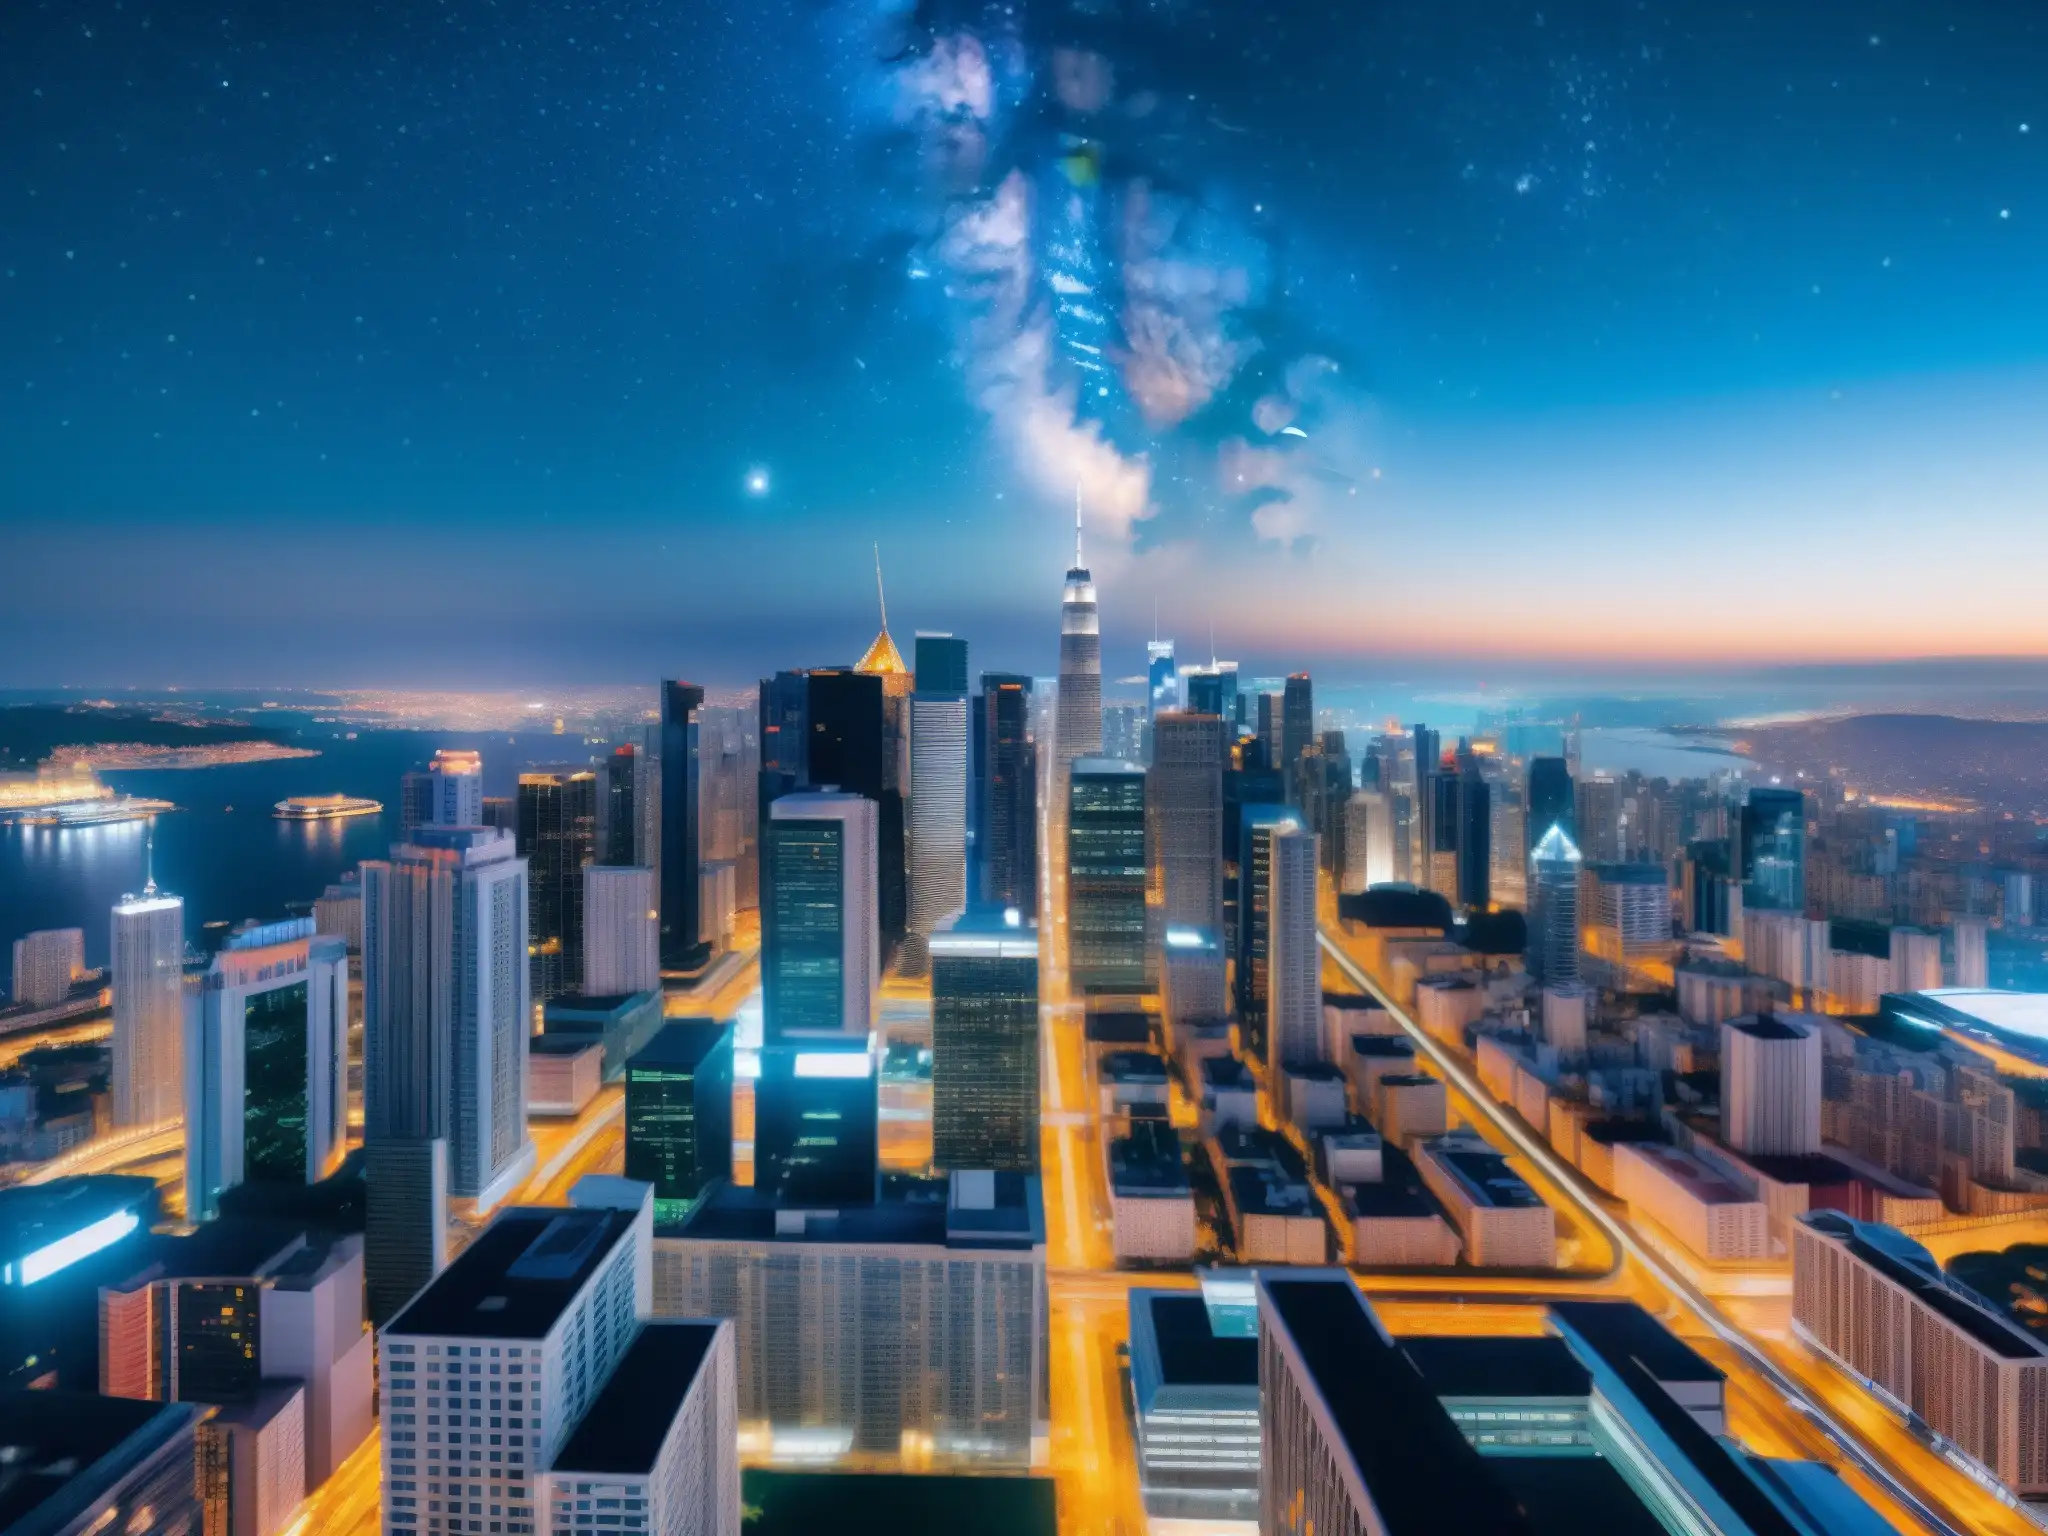 Imagen impactante de una ciudad moderna de noche, con rascacielos iluminados y un cielo estrellado